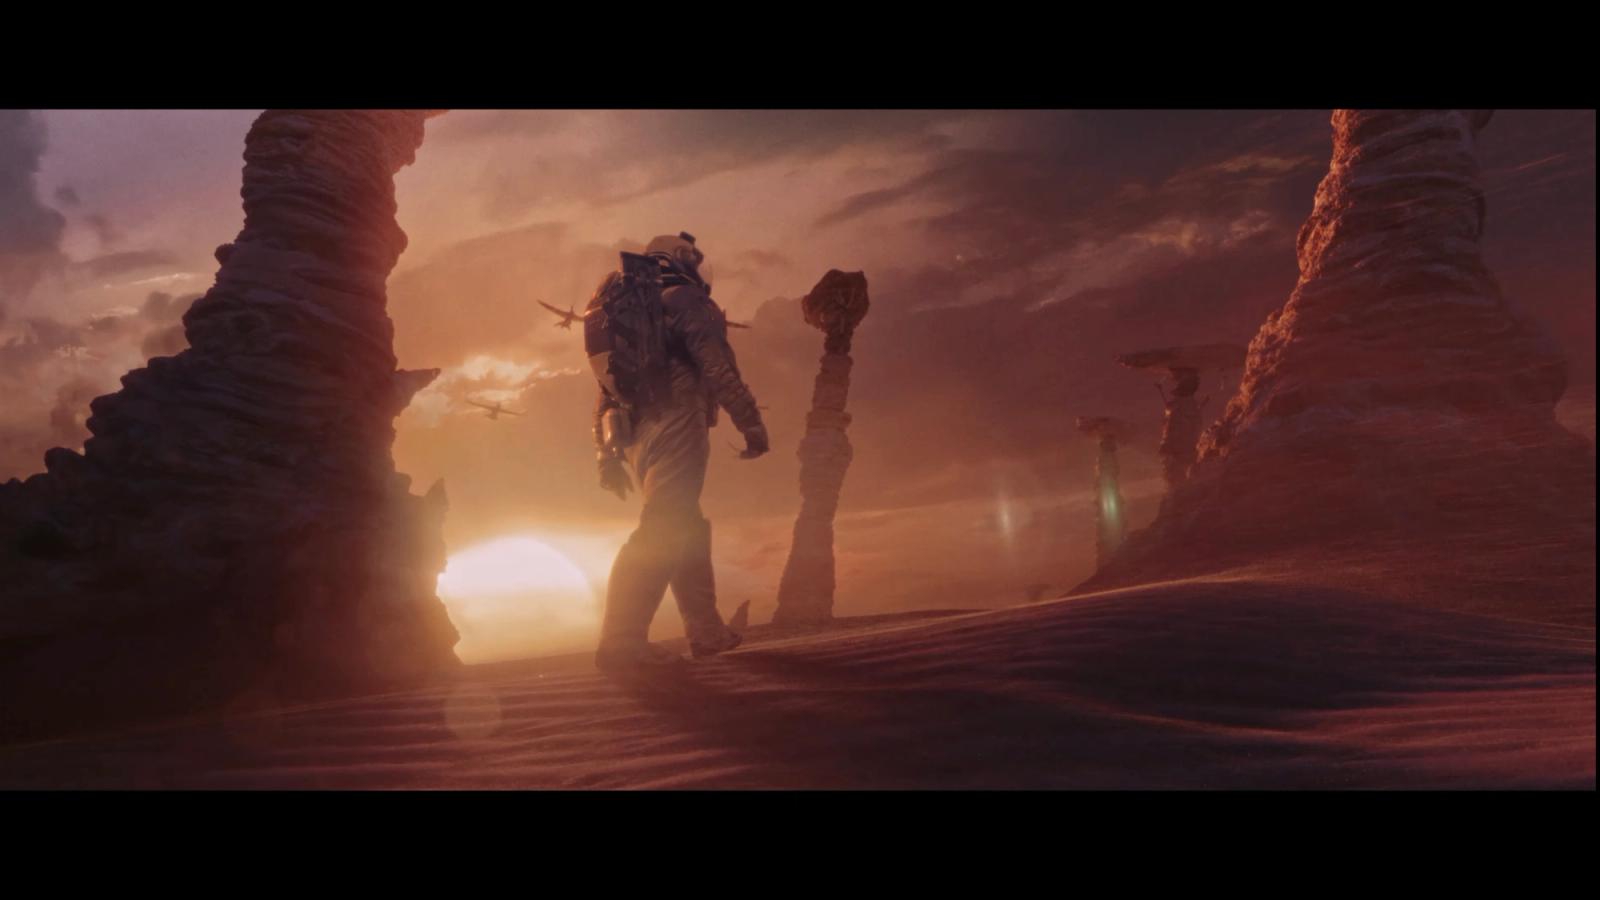 An explorer walks through a sun lit planet